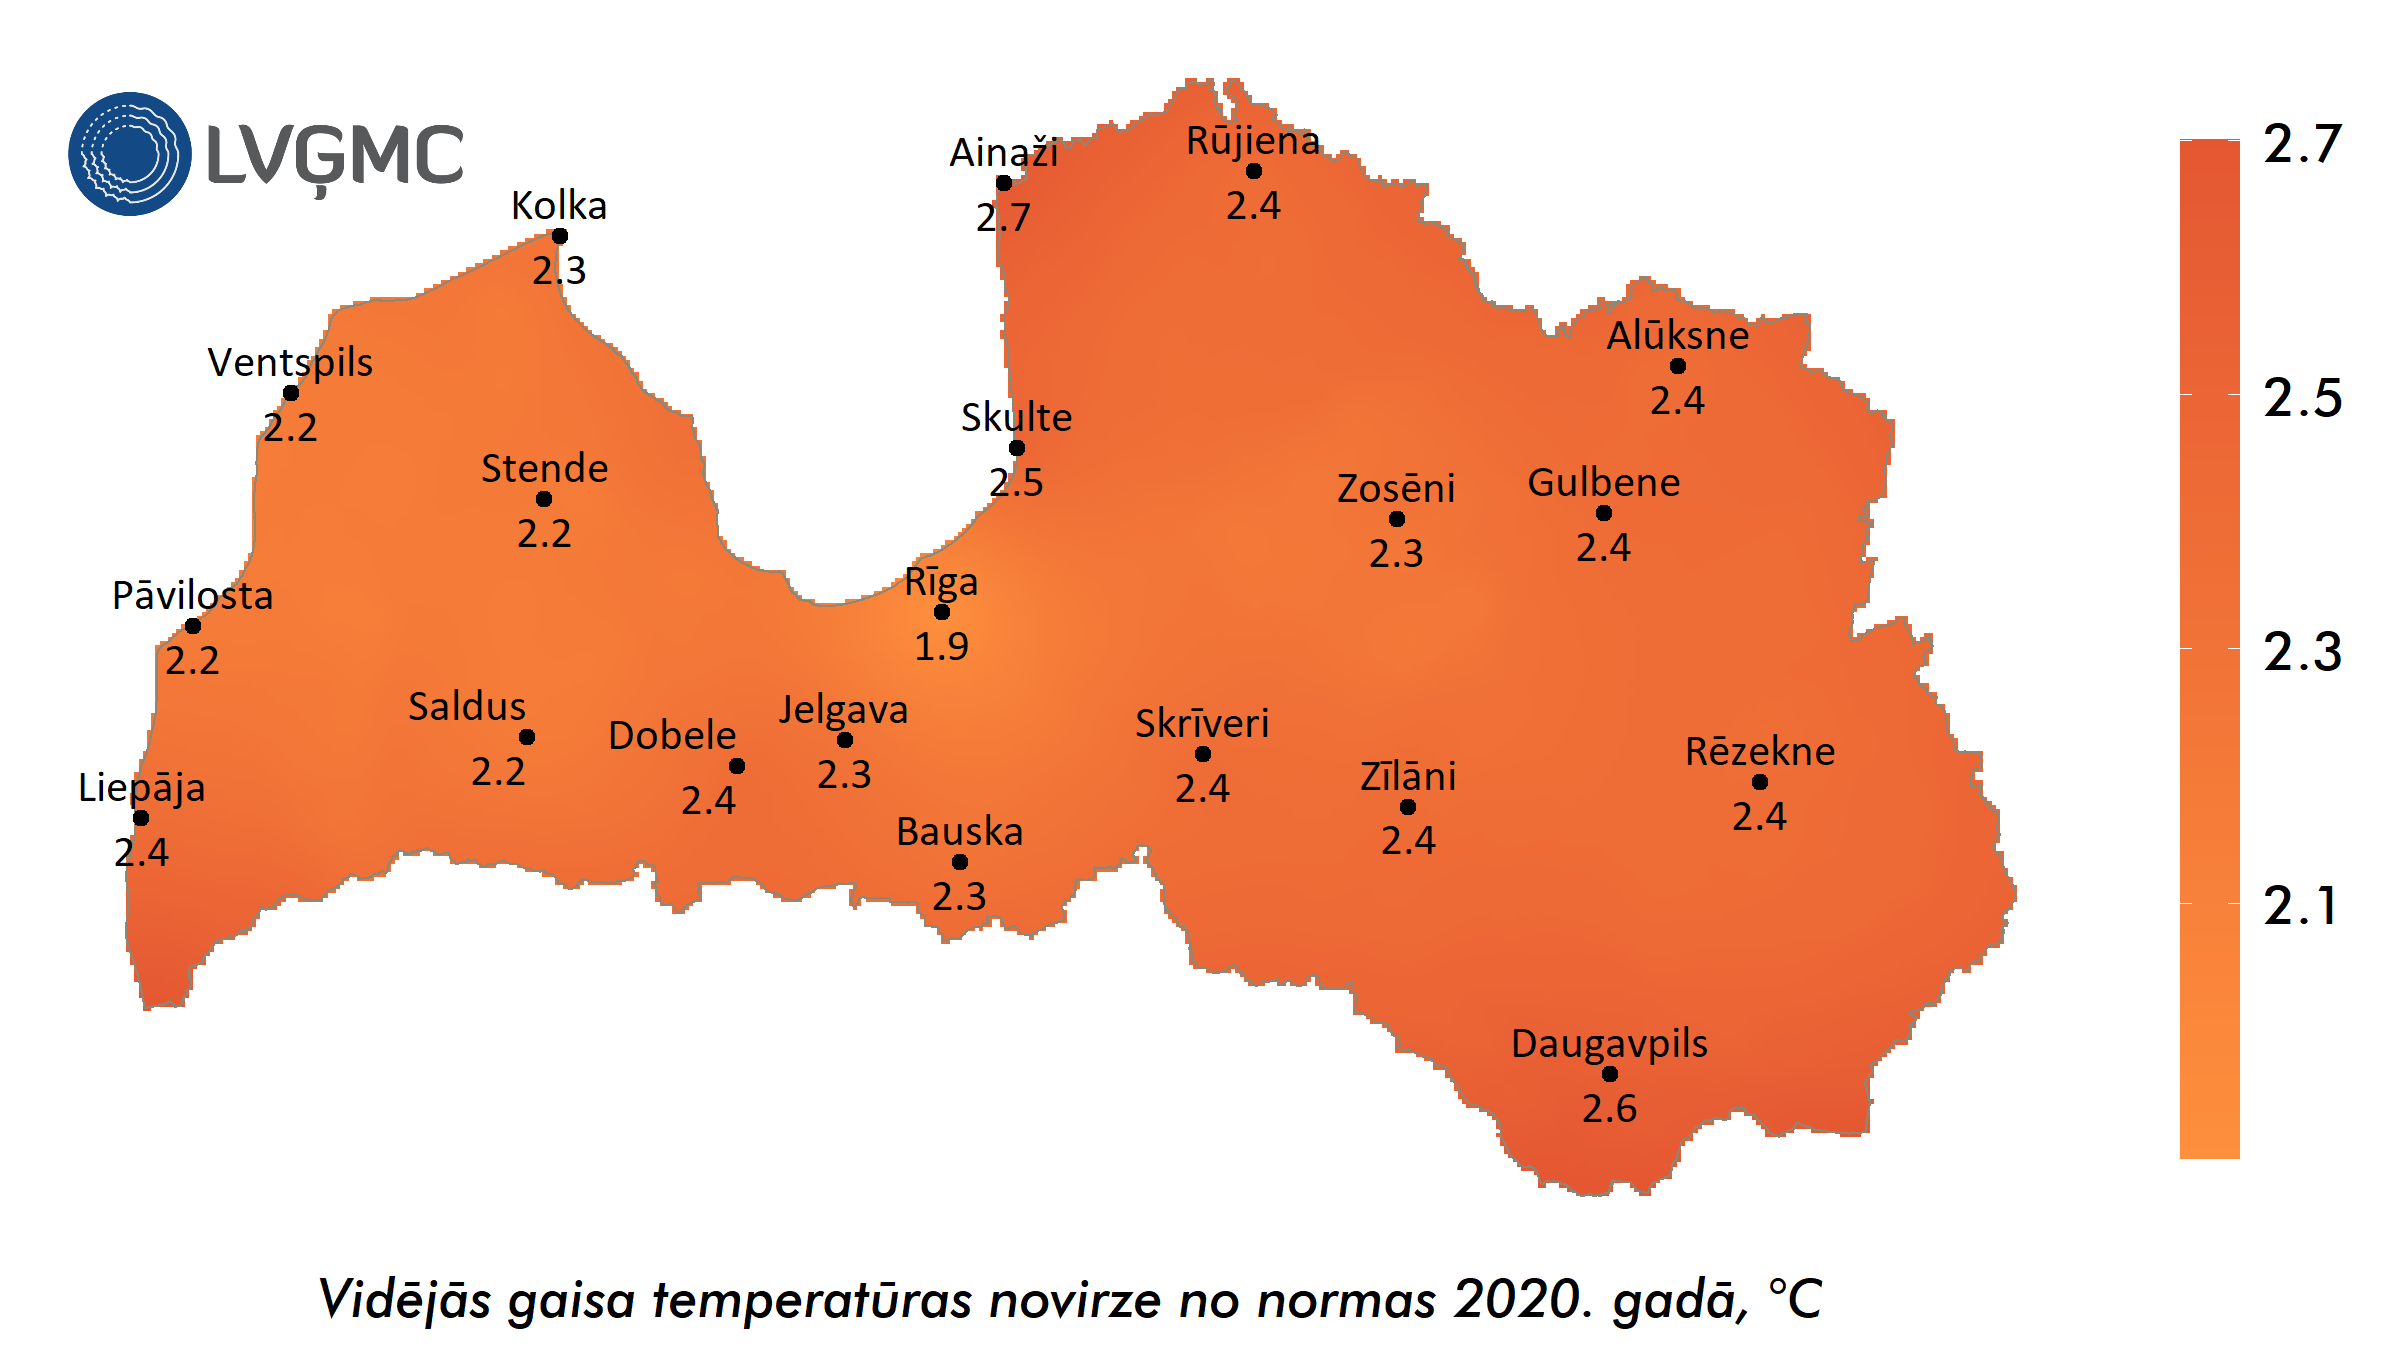 2020. gada vidējās gaisa temperatūras novirze no normas, °C